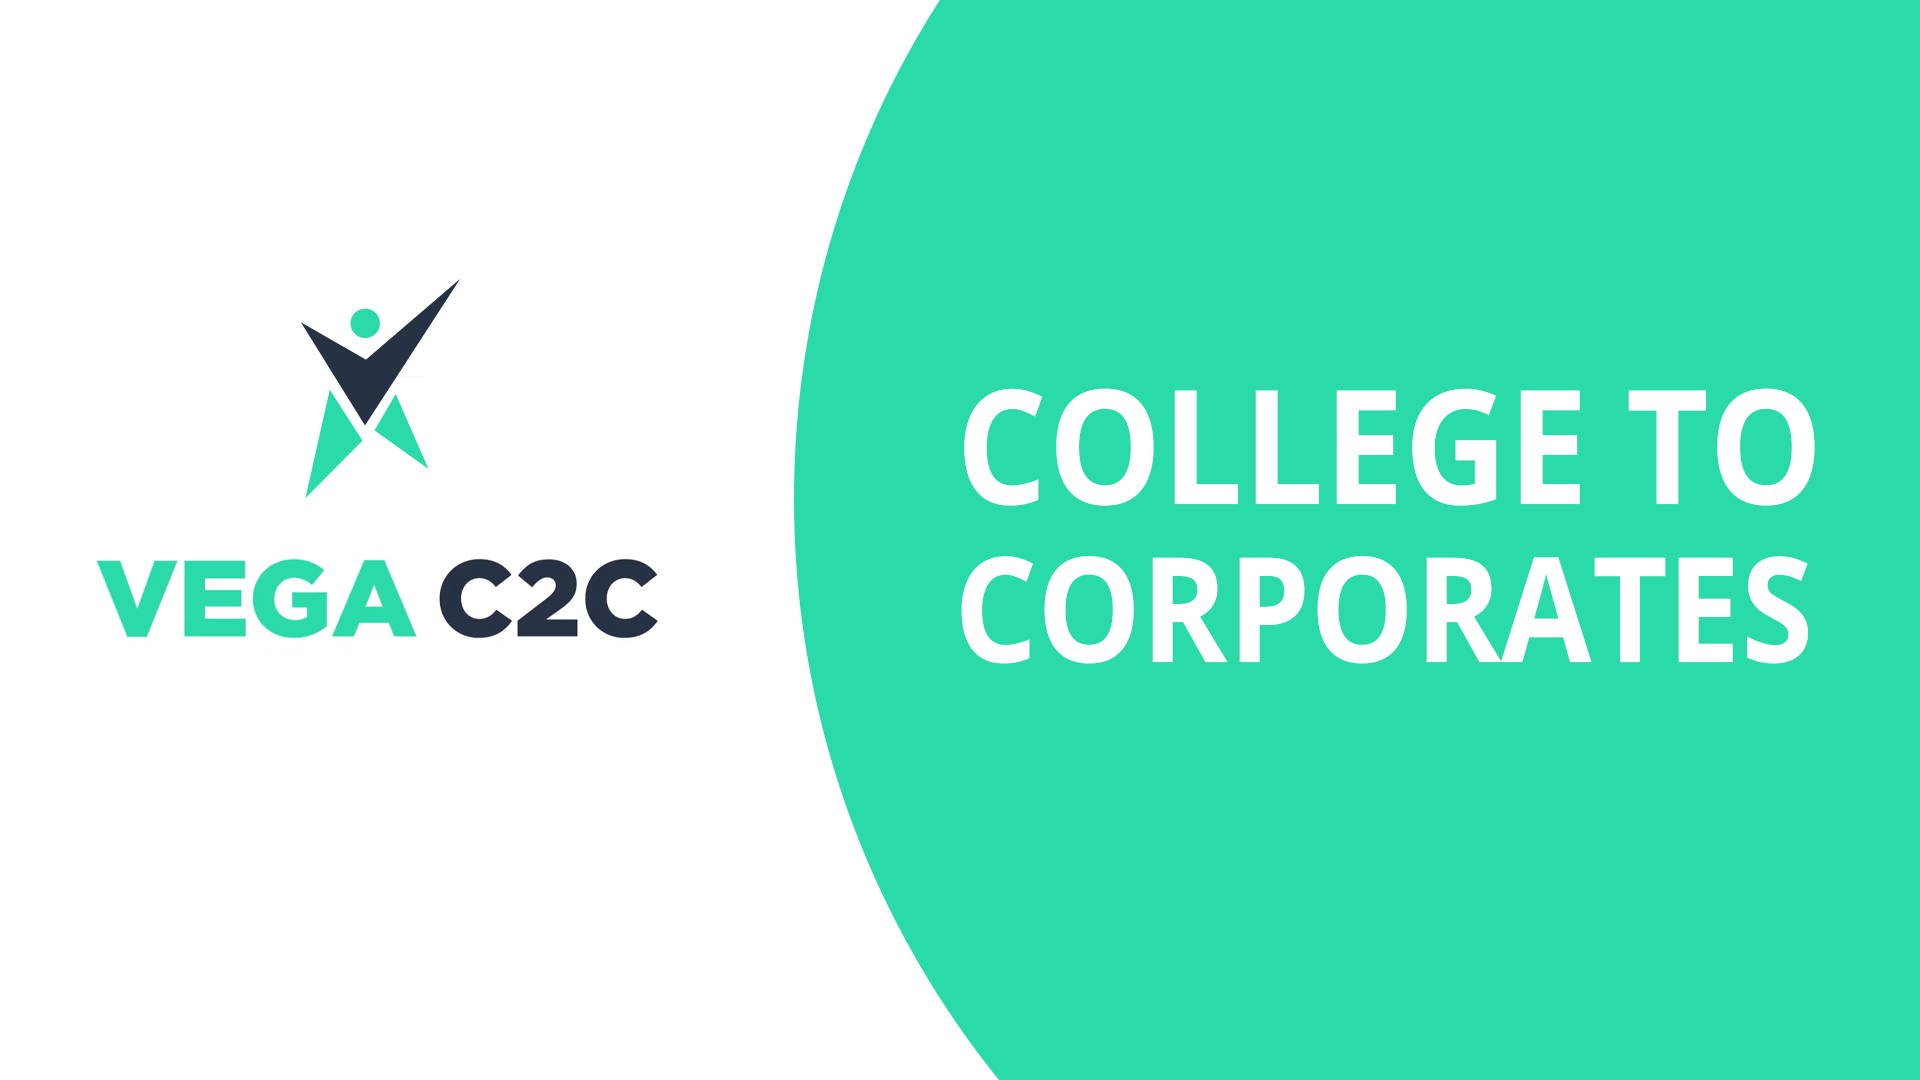 Vega C2C | College To Corporates